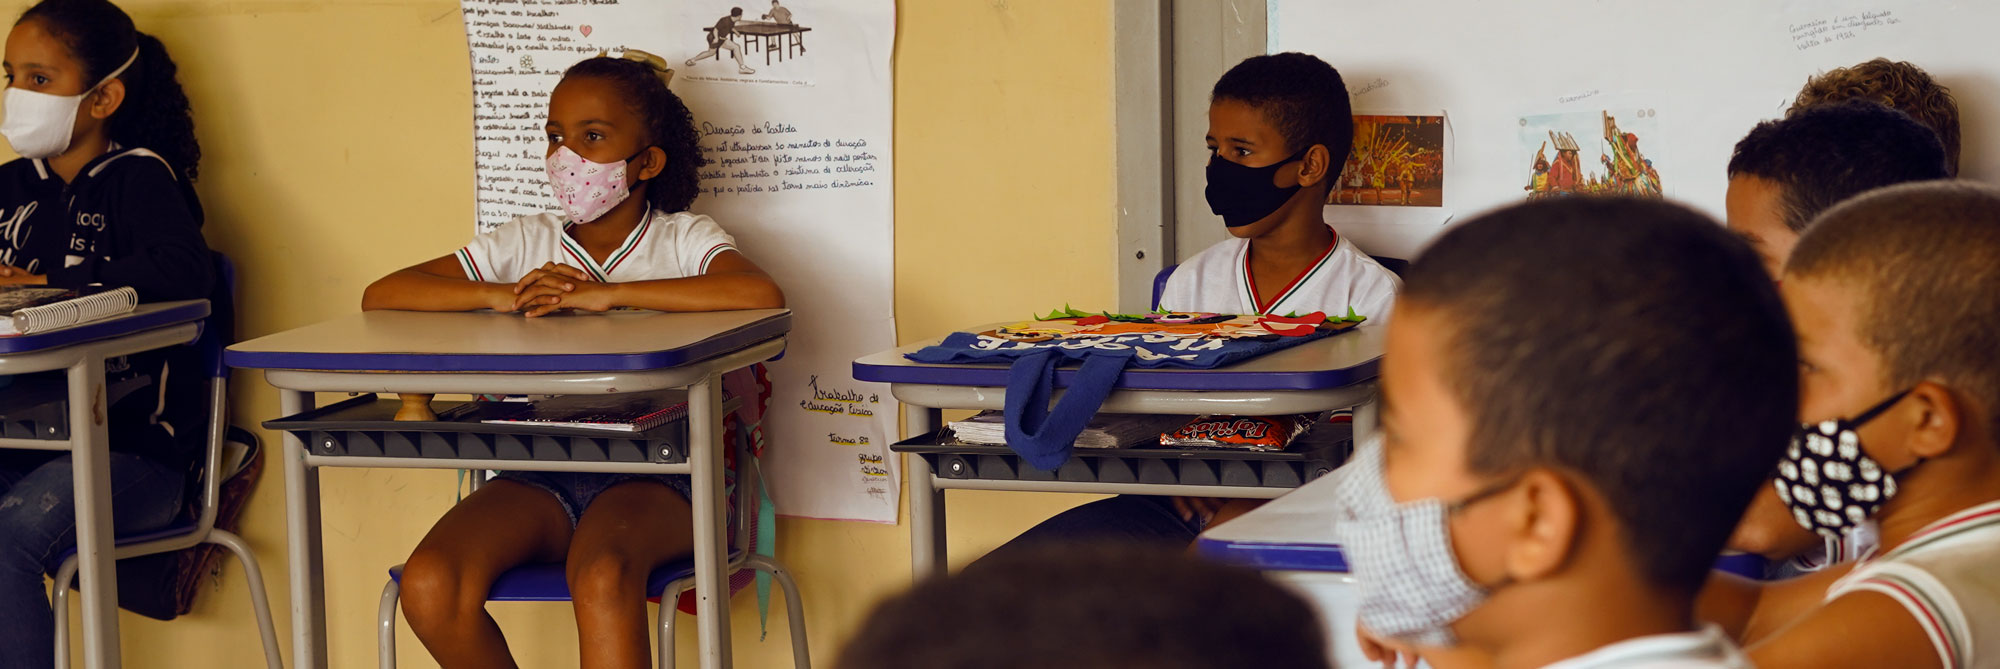 Sala de aula de uma escola pública, sete crianças sentadas, cada uma em sua mesa, olhando para a frente da sala de aula, todas usam máscaras de proteção. A parede da sala de aula é de cor bege e possui cartazes fixados